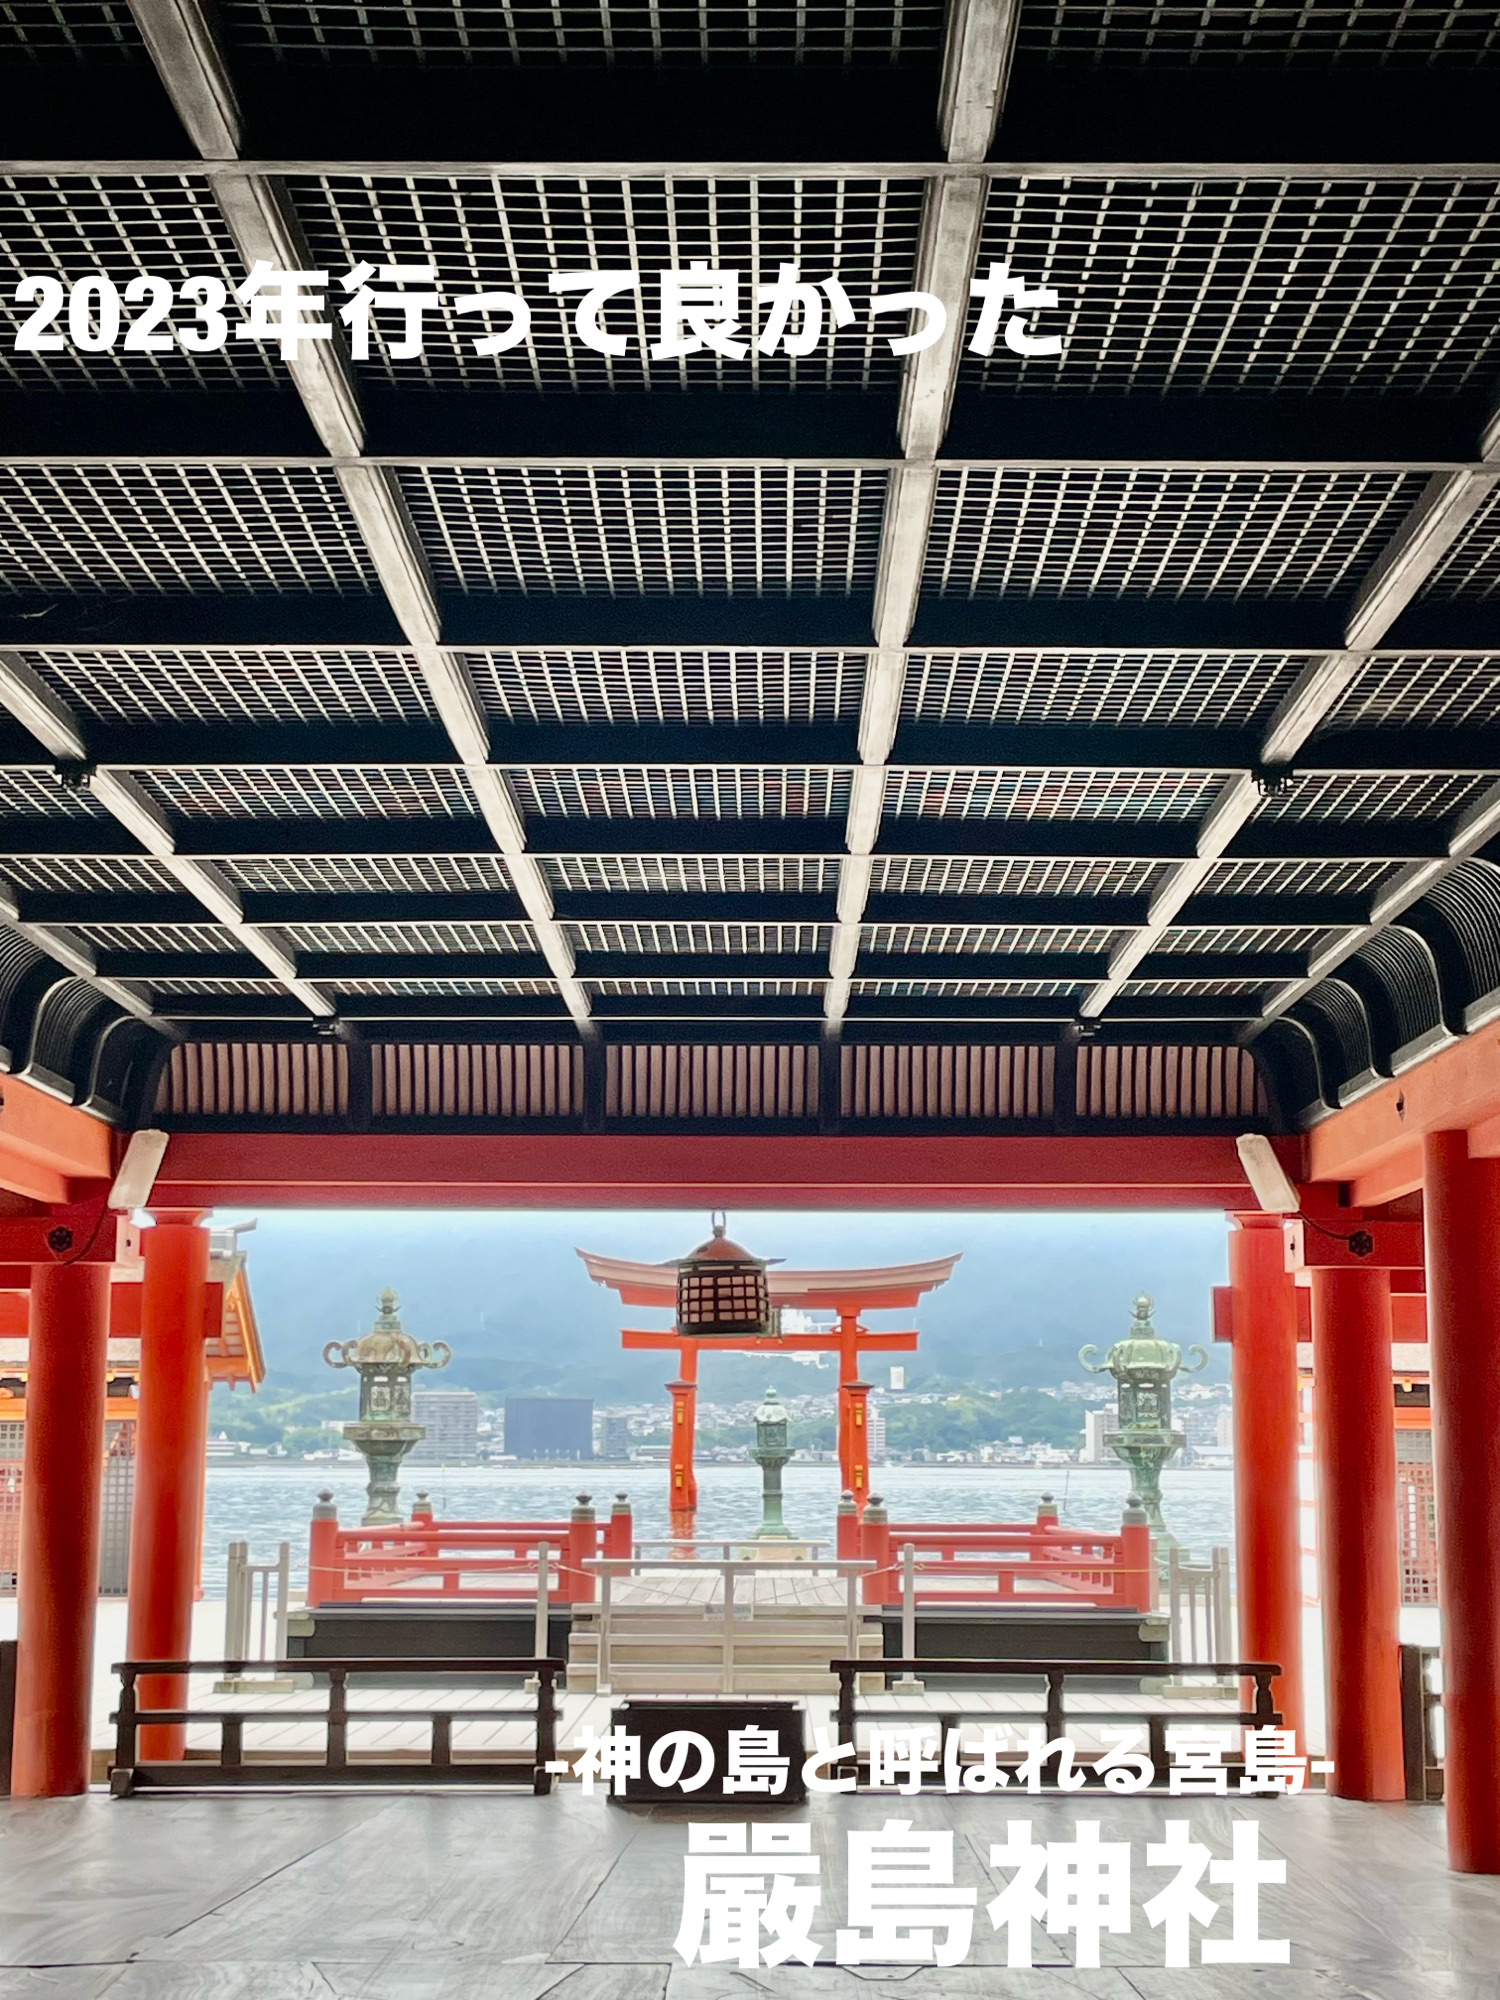 【广岛县】2023年去的“宫岛严岛神社”